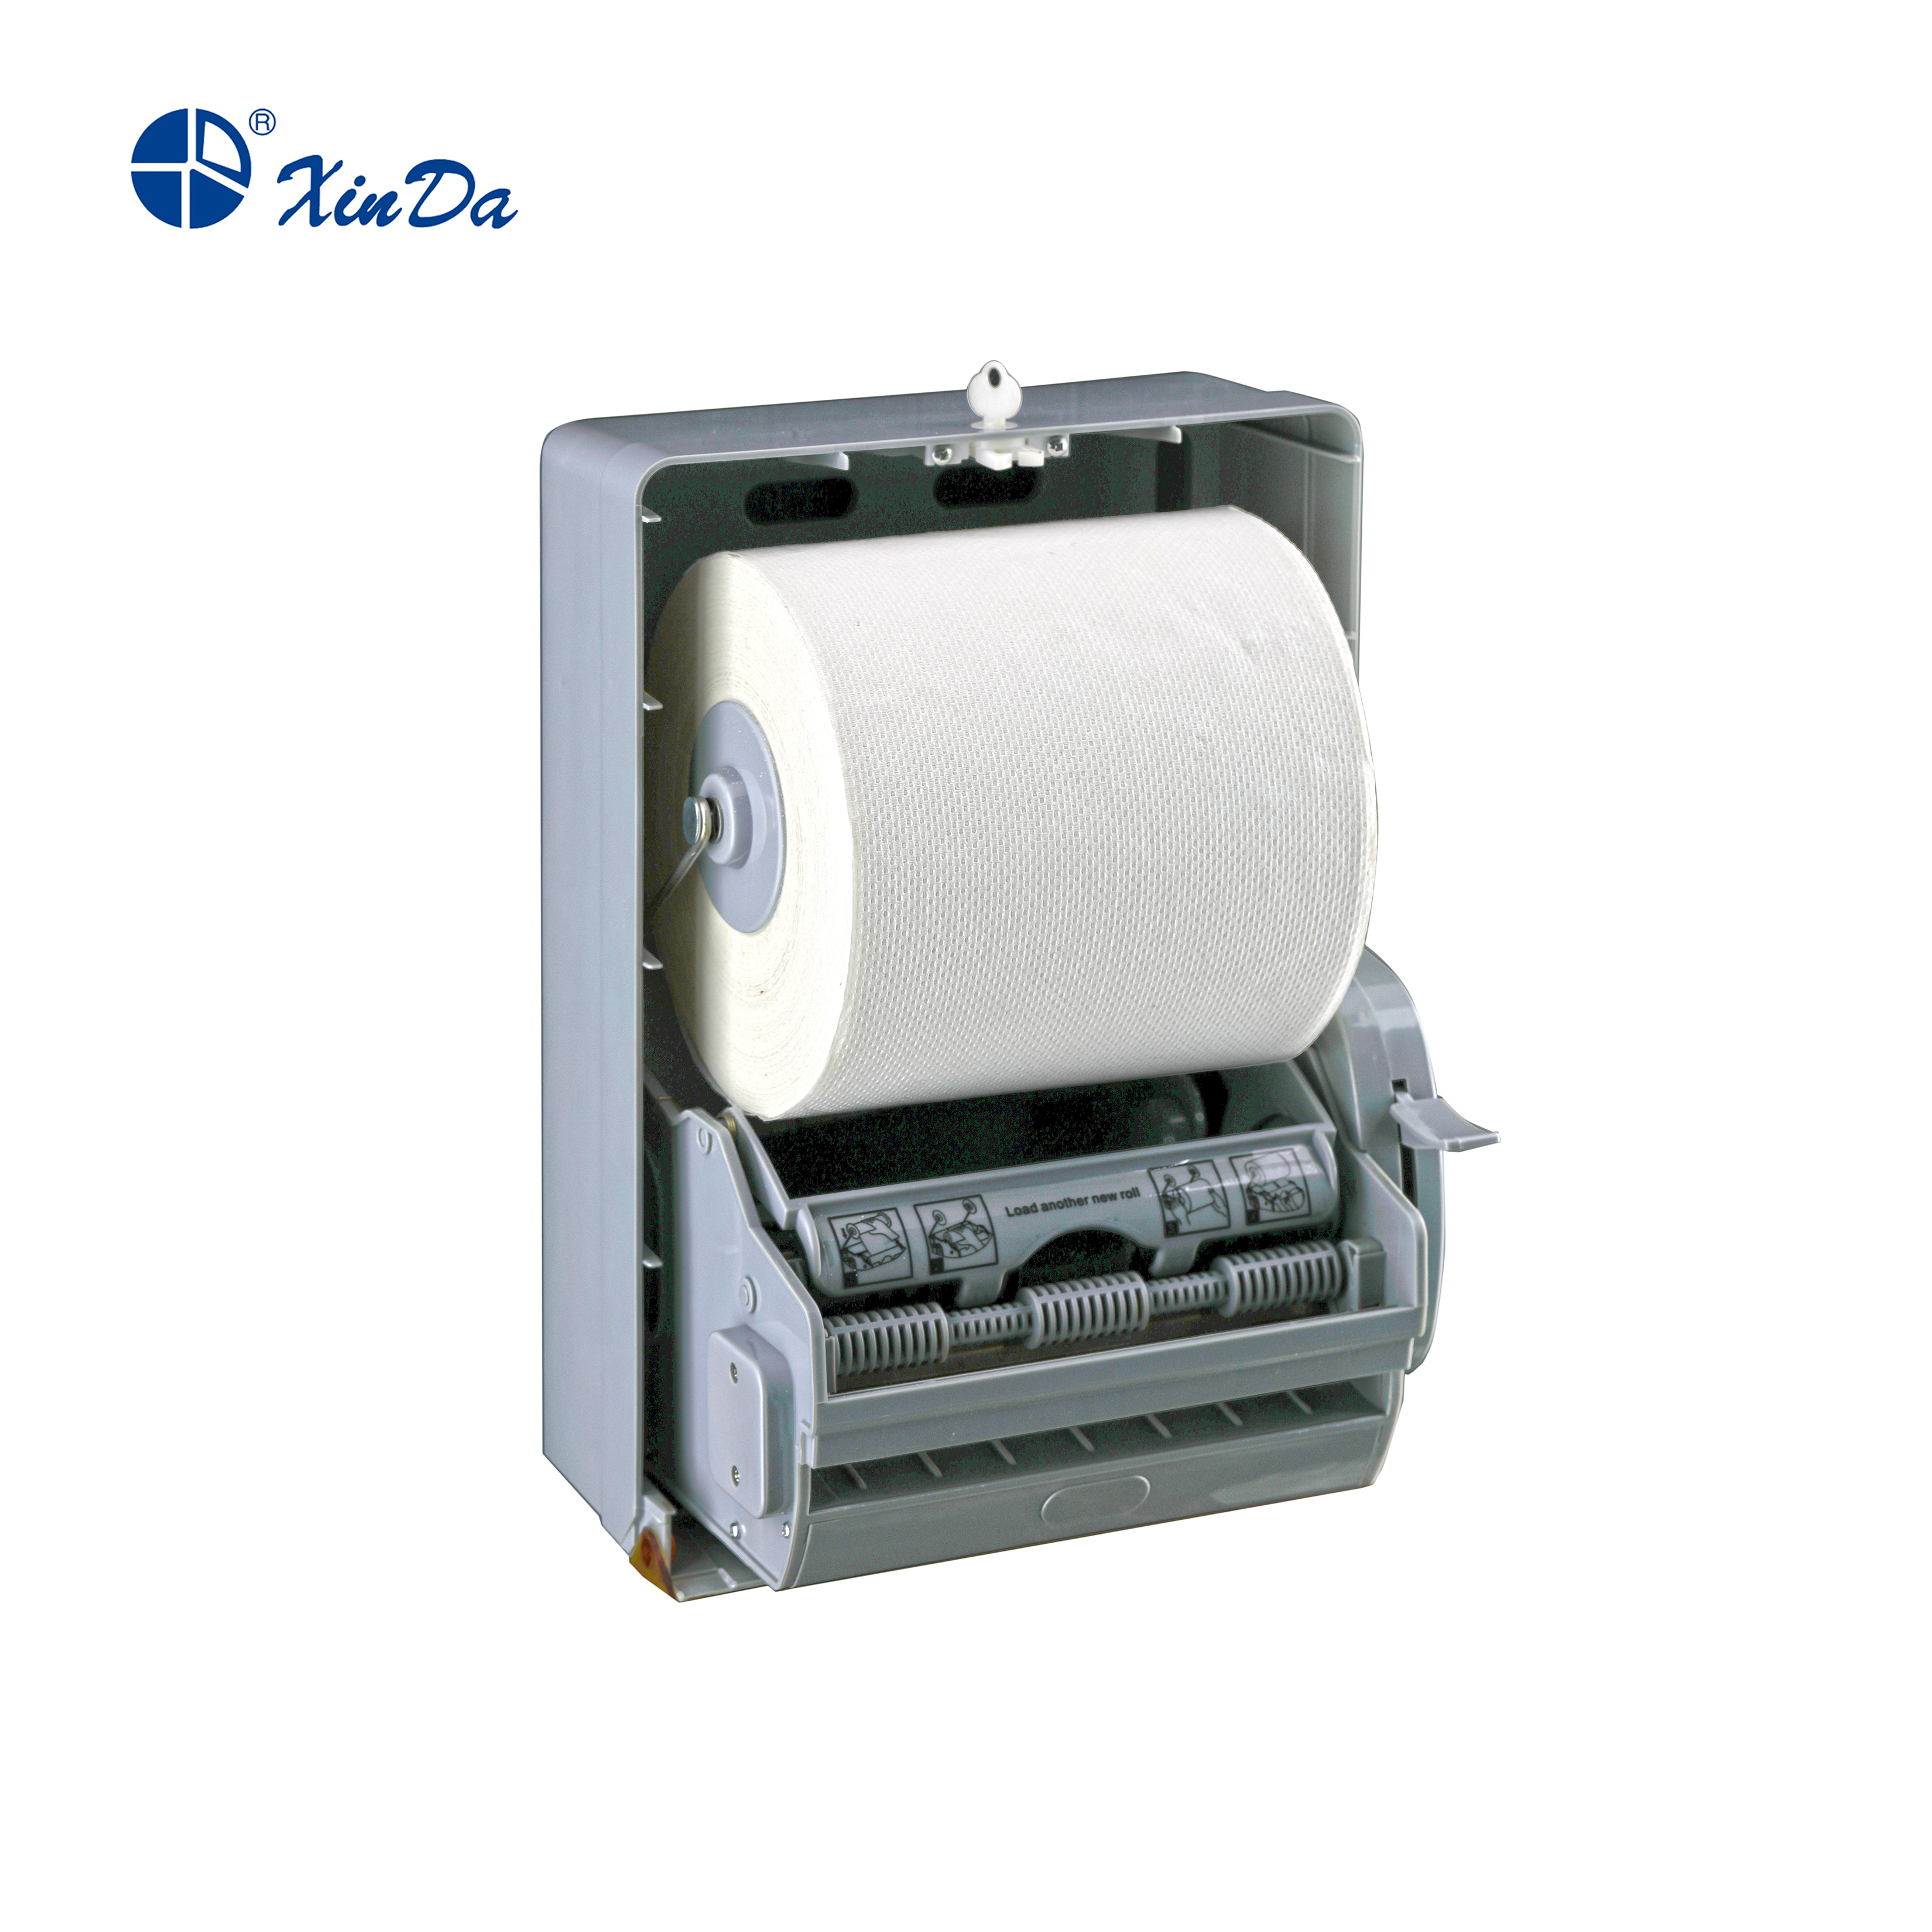 Die XinDa CZQ20s nachfüllbaren Tissue-Boxen ABS-Kunststoff-Papierhalter Typ Serviettenspender CD-8098 Papierspender